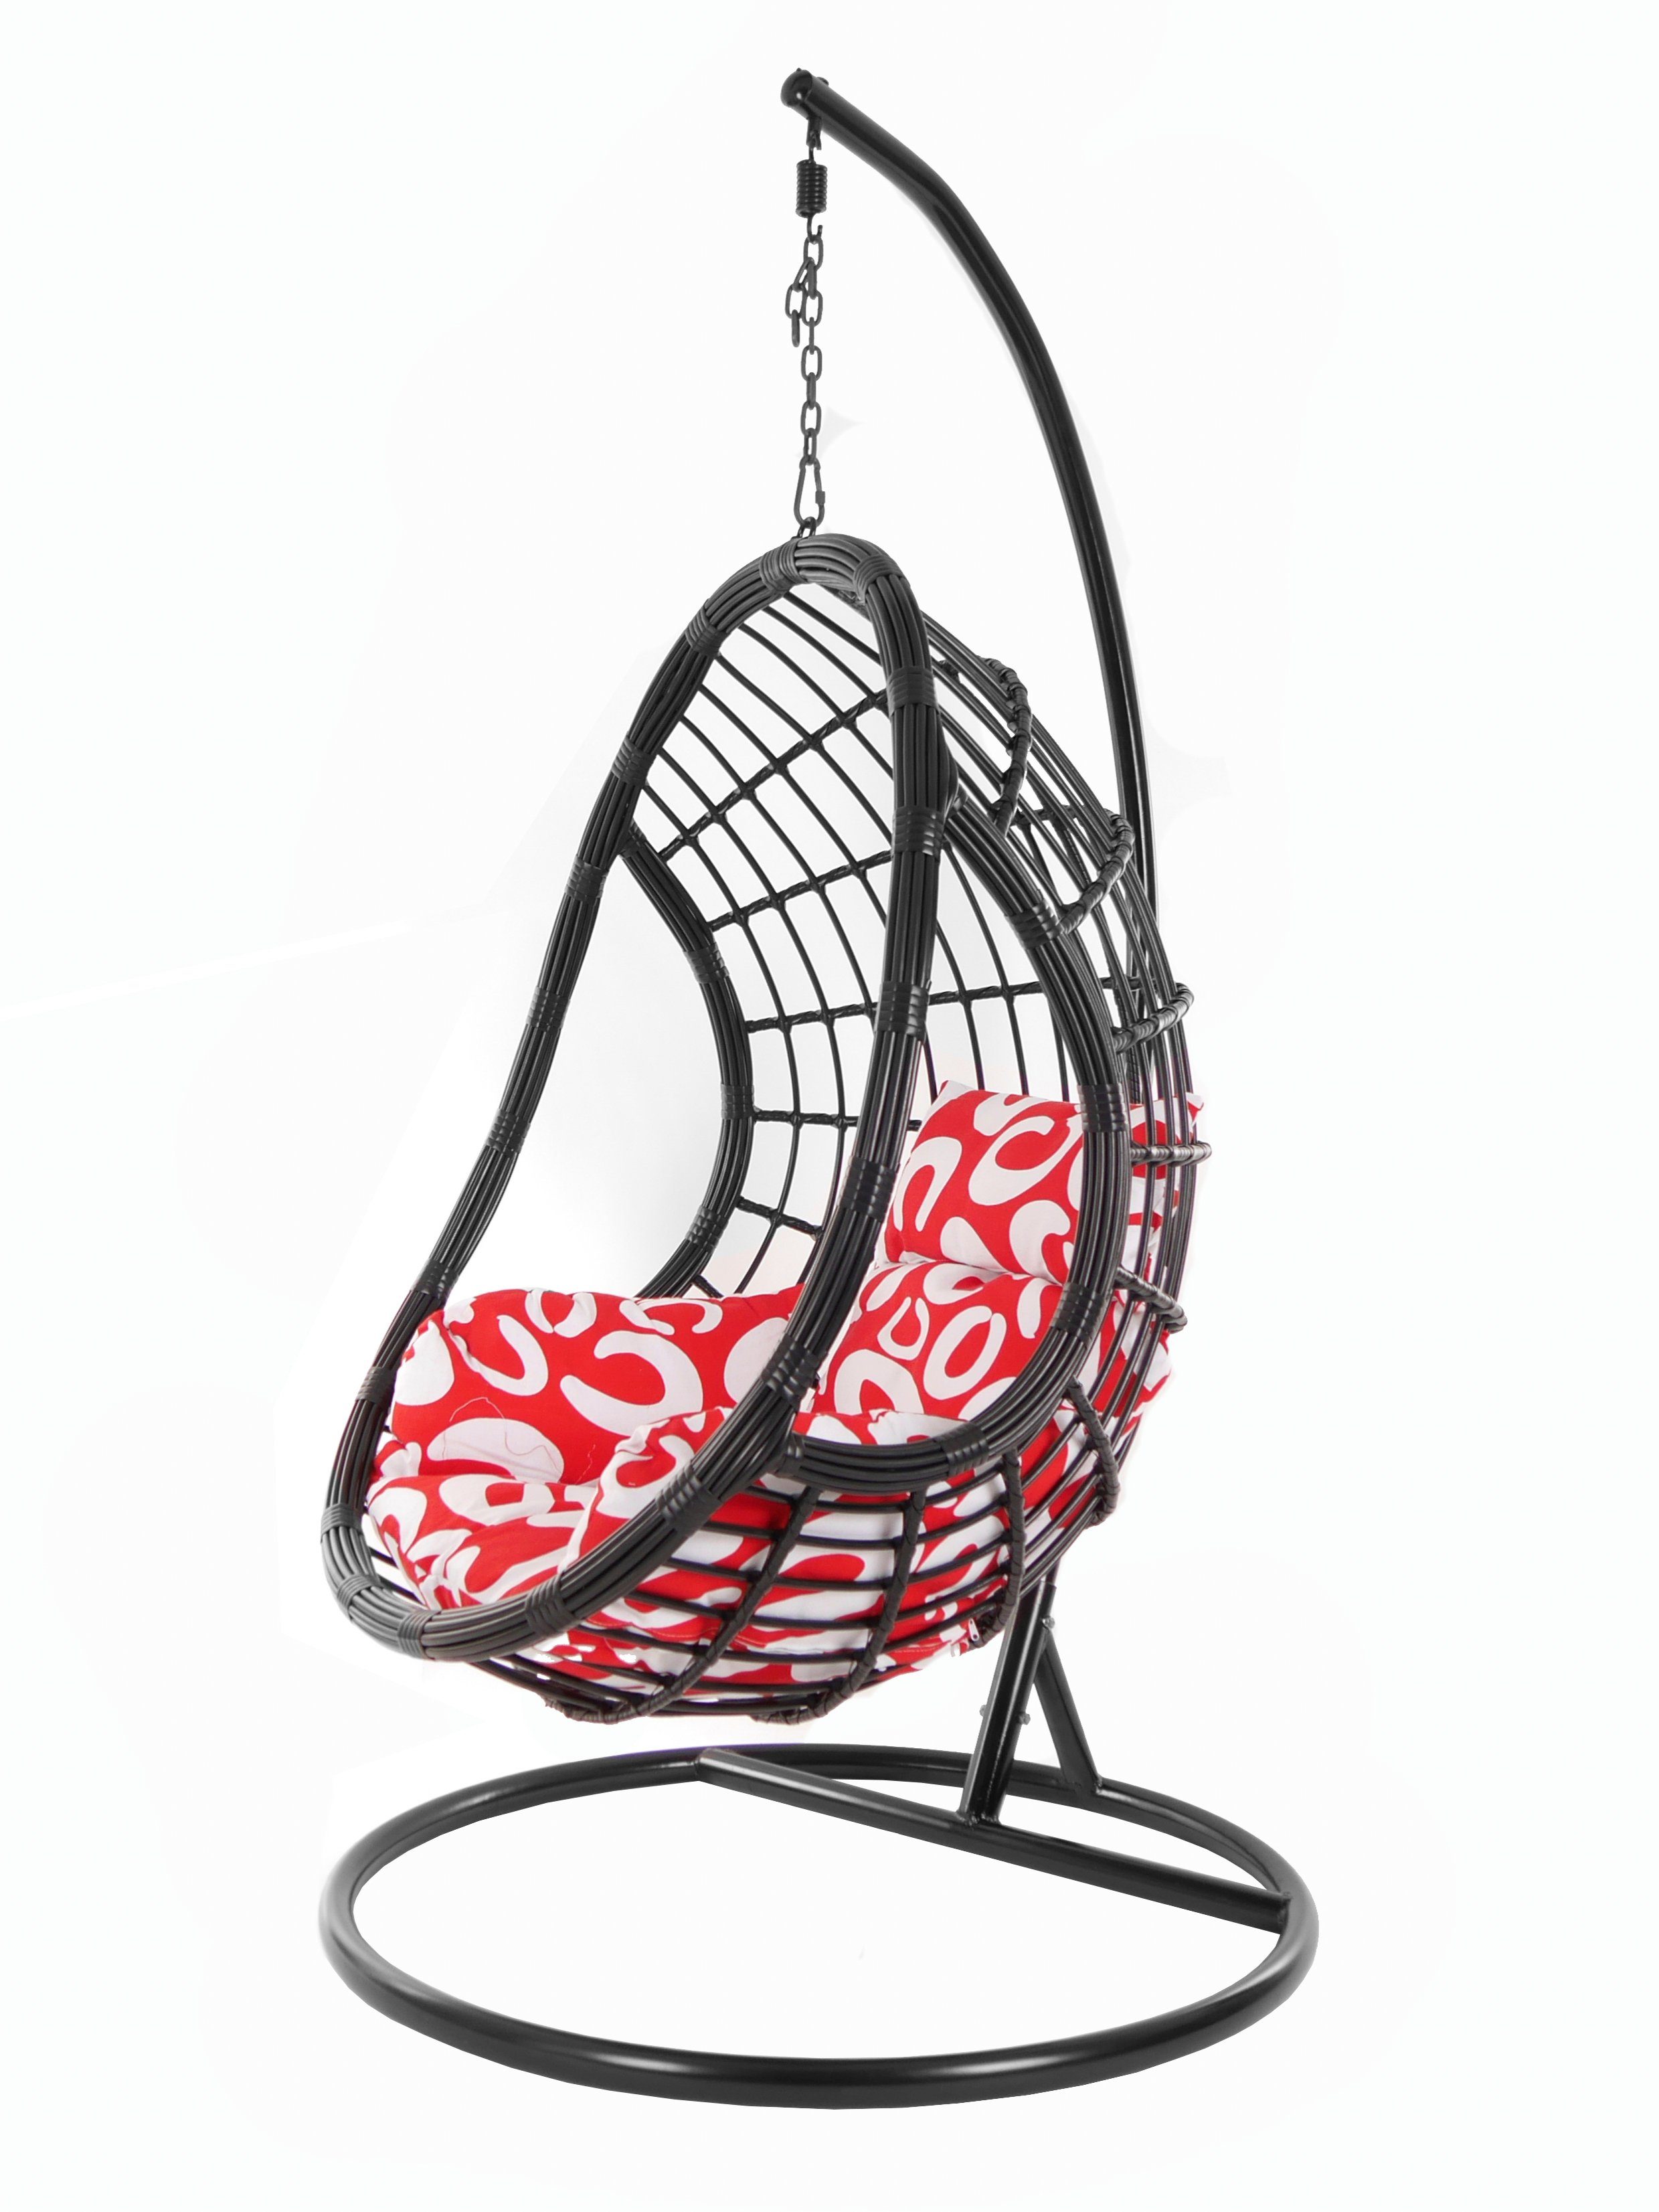 black, PALMANOVA Muster KIDEO curly) (3012 Schwarz, Gestell Hängesessel Hängesessel Kissen, Schwebesessel, und Loungemöbel, mit Chair, gemustert Swing